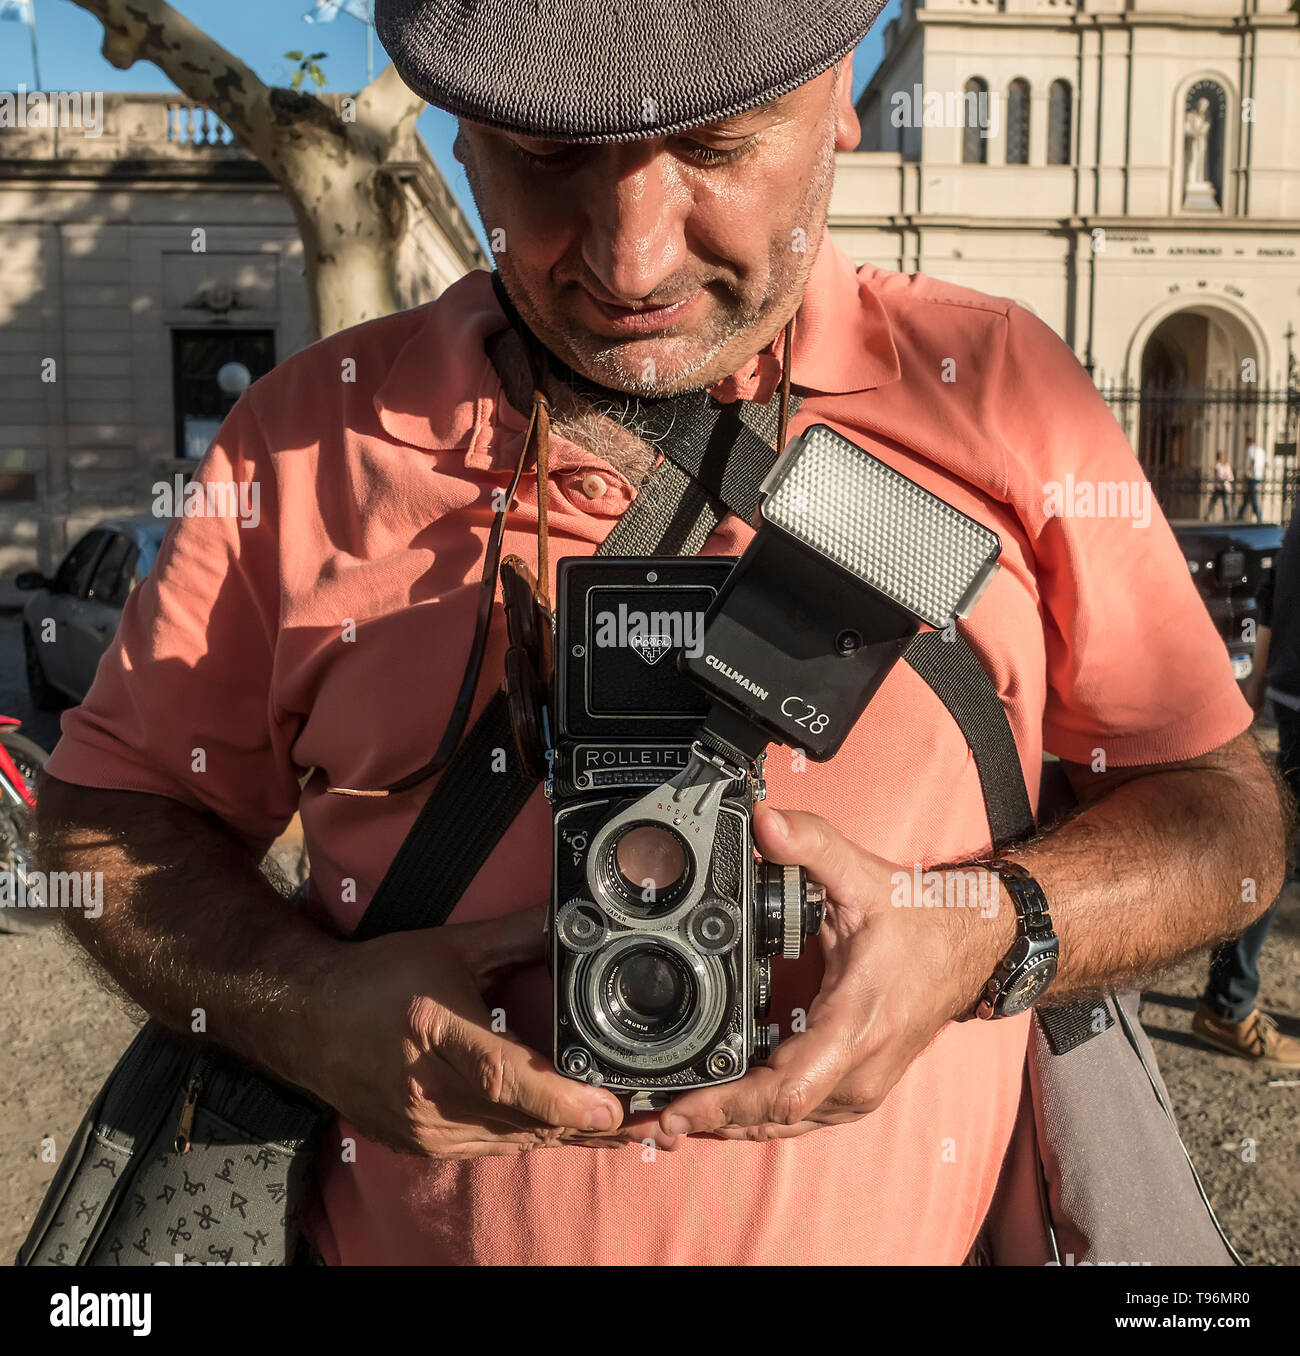 Homme utilisant une caméra analogique à deux réflexes Banque D'Images